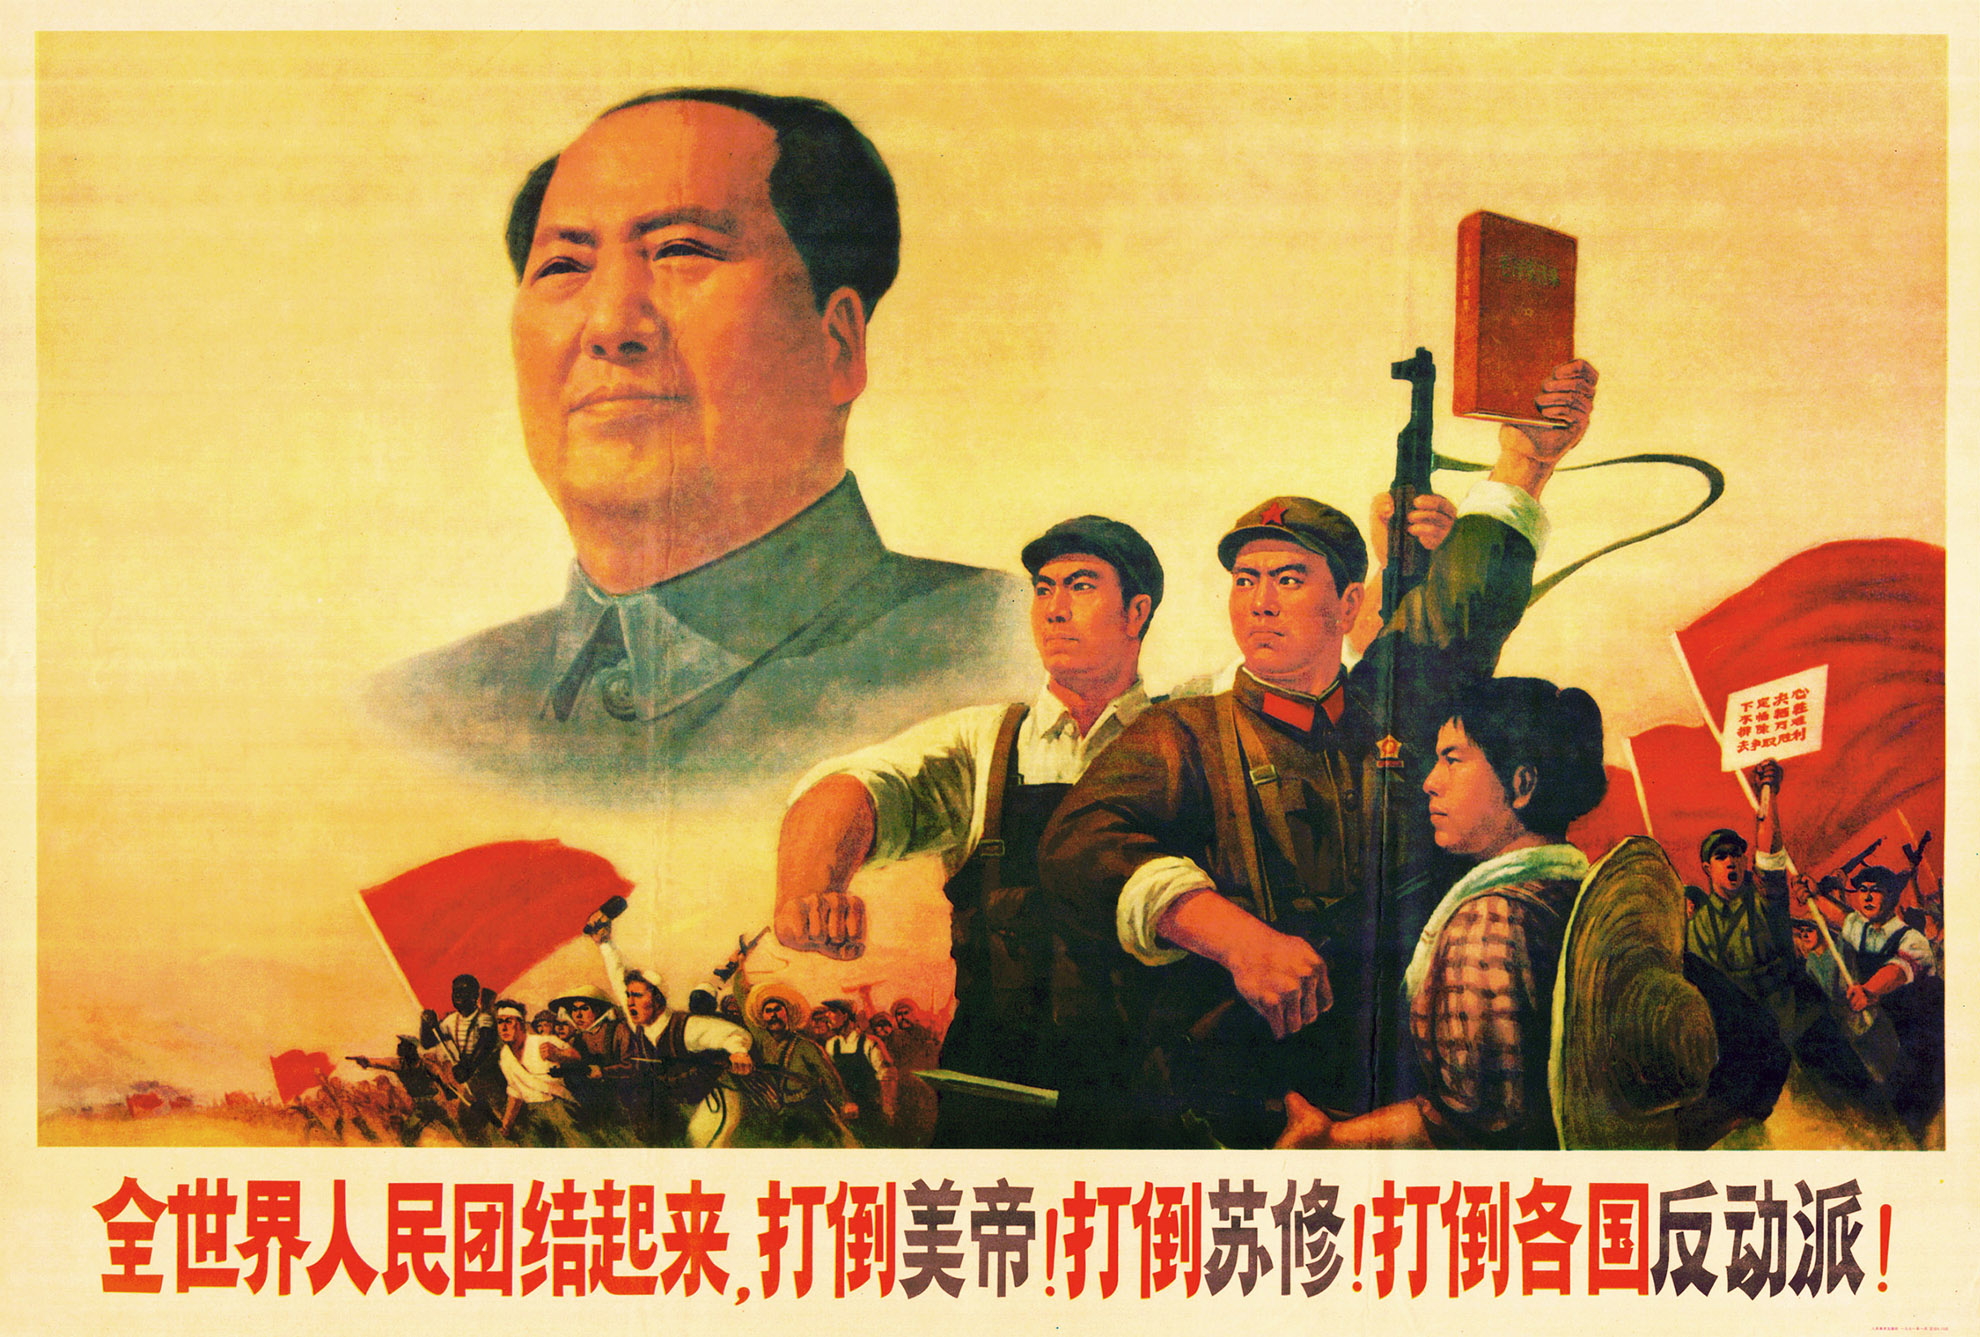 10 ЗАКОНОВ ТИРАНИИ: автор «Красной книжечки» и «культурной революции»